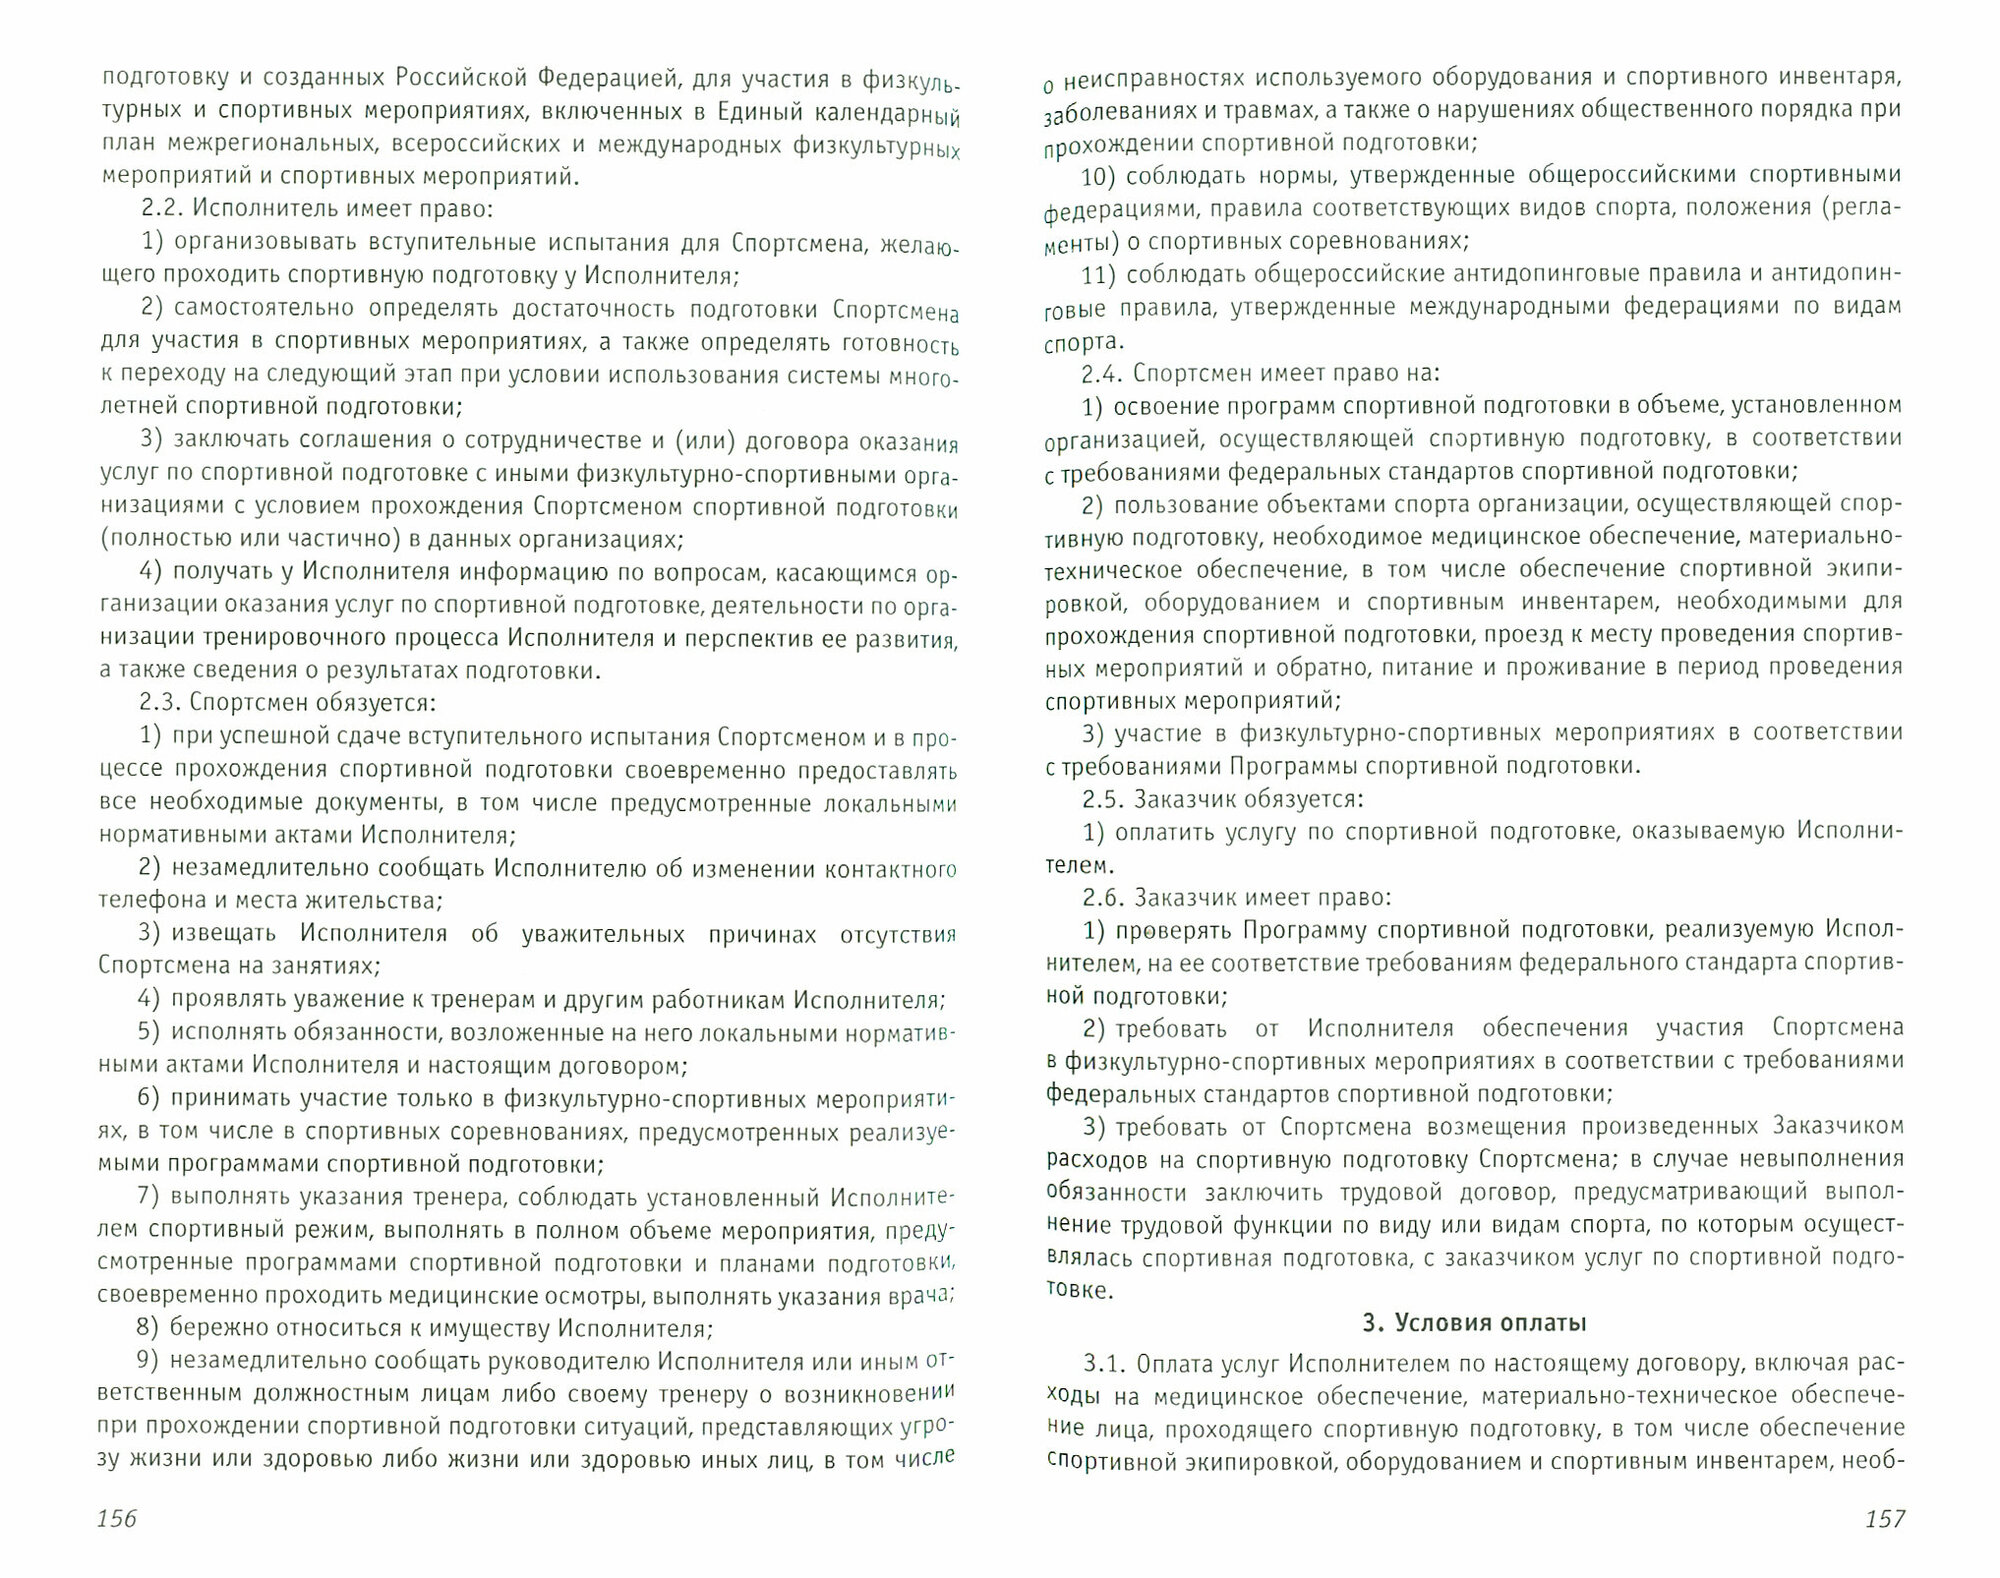 Нормативные и правовые основы организации спортивной подготовки в Российской Федерации - фото №2